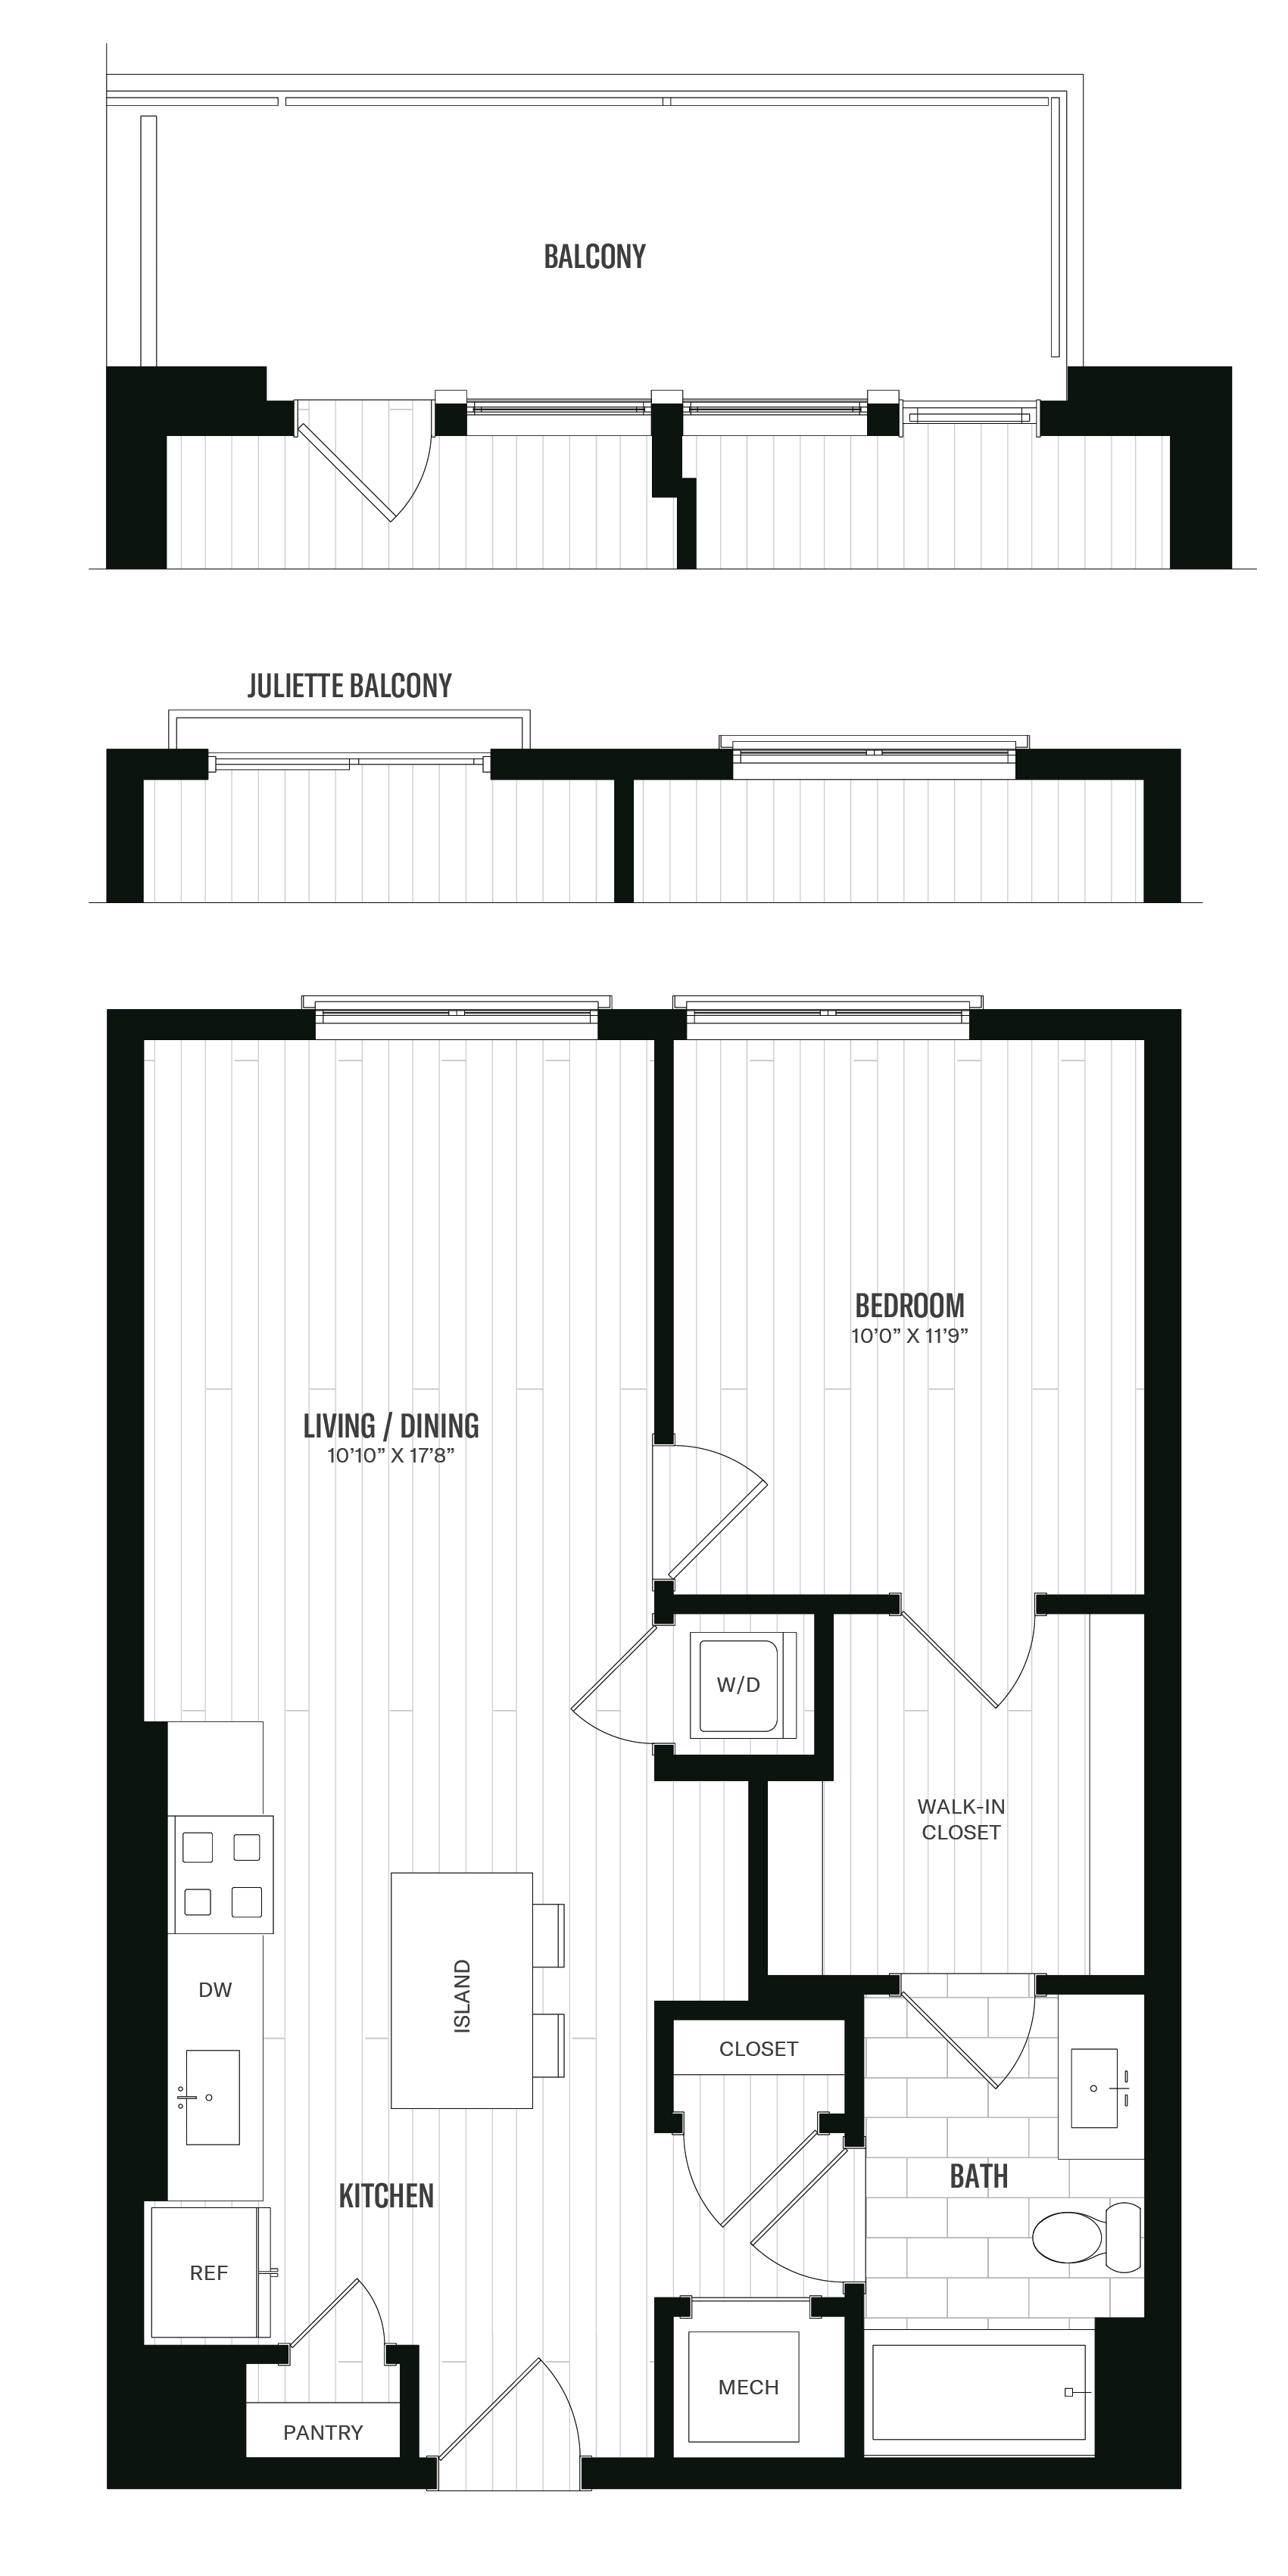 Floorplan image of unit 623